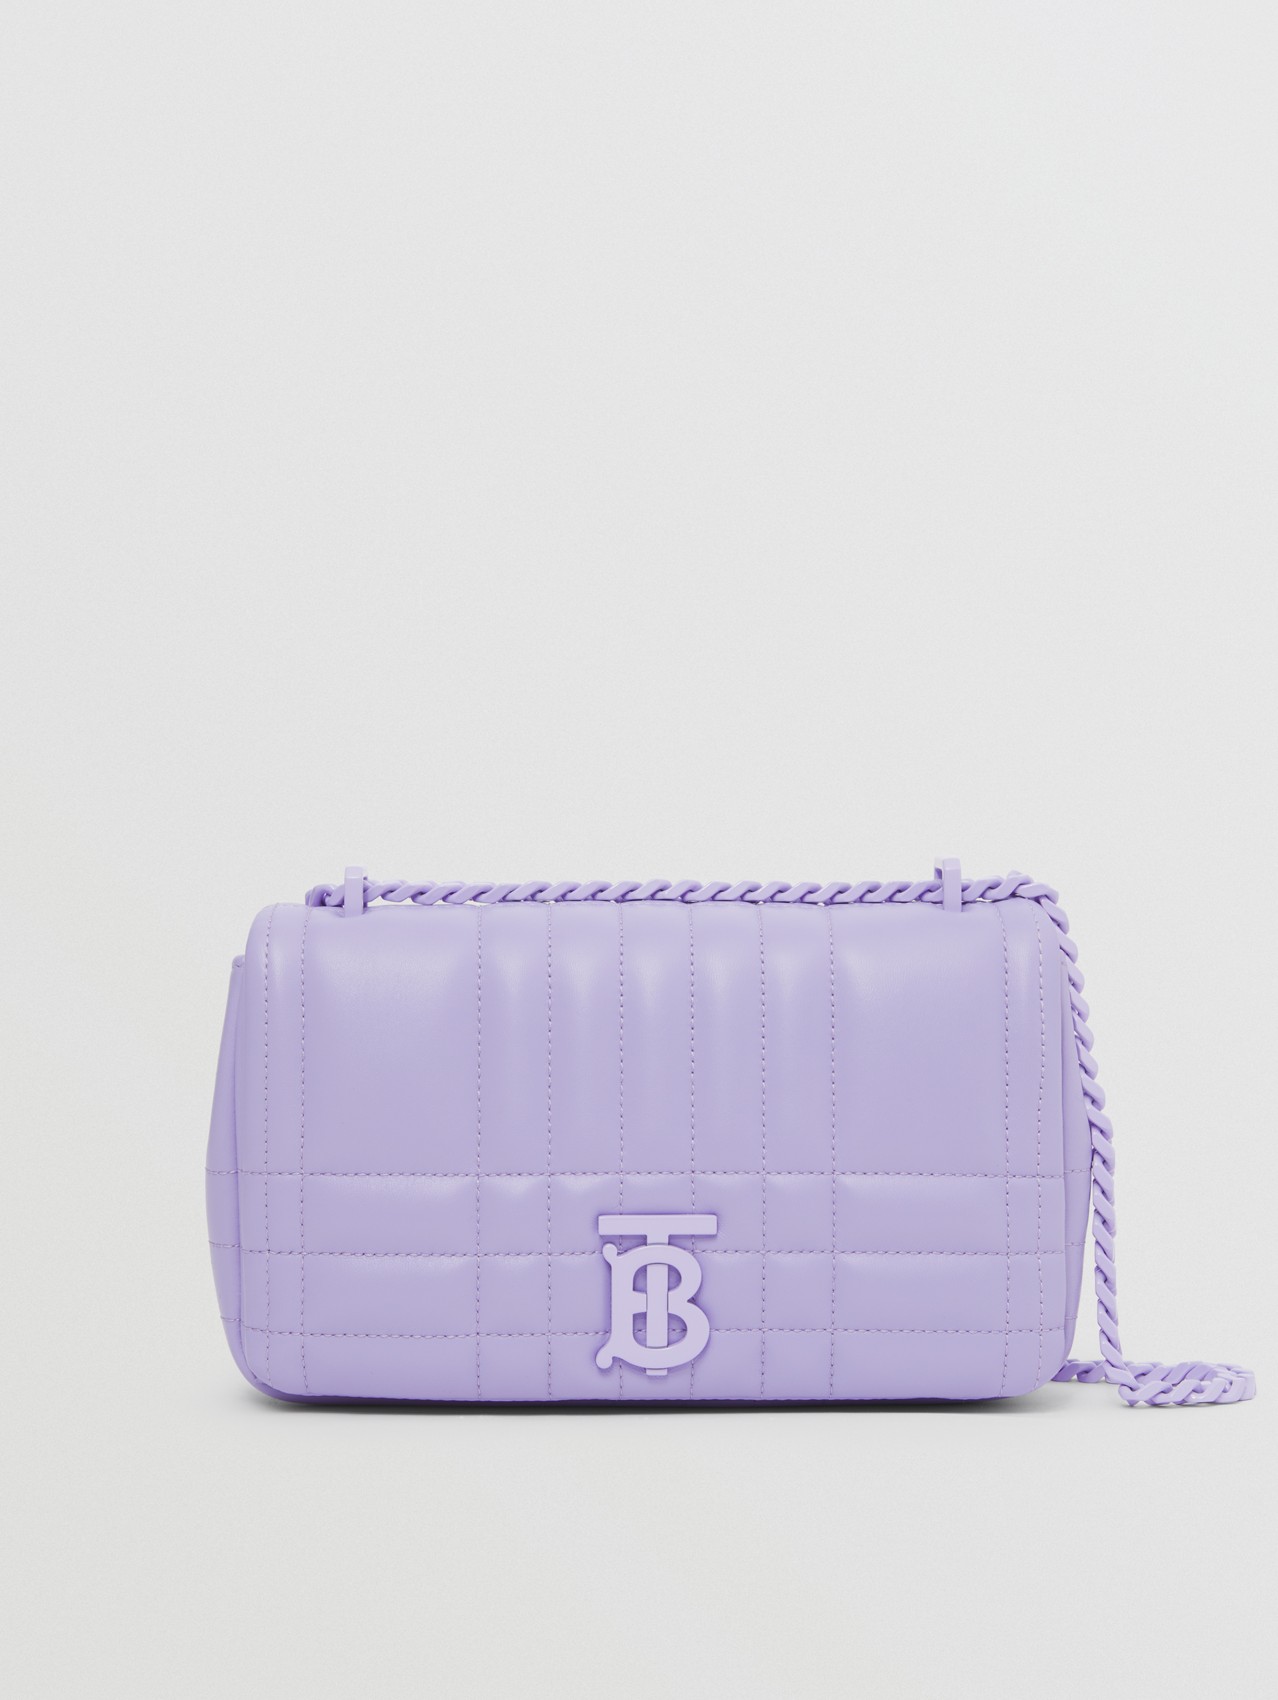 Стеганая сумка Lola, компактный размер in Нежно-фиолетовый